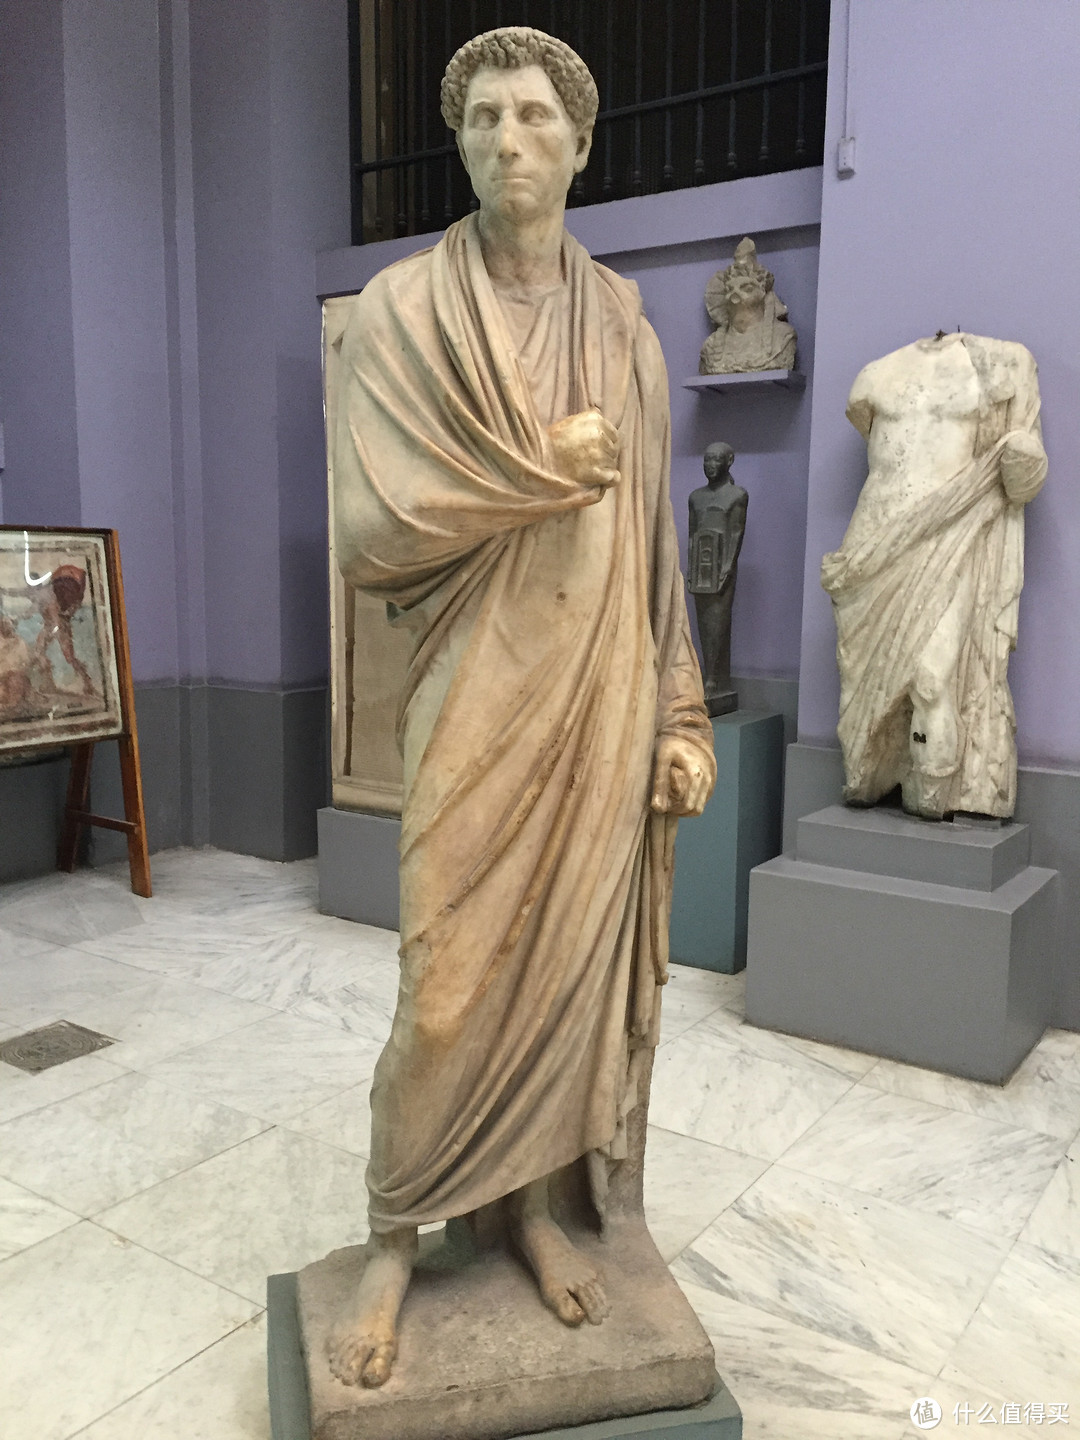 罗马时期的雕塑 完全是另一个画风了